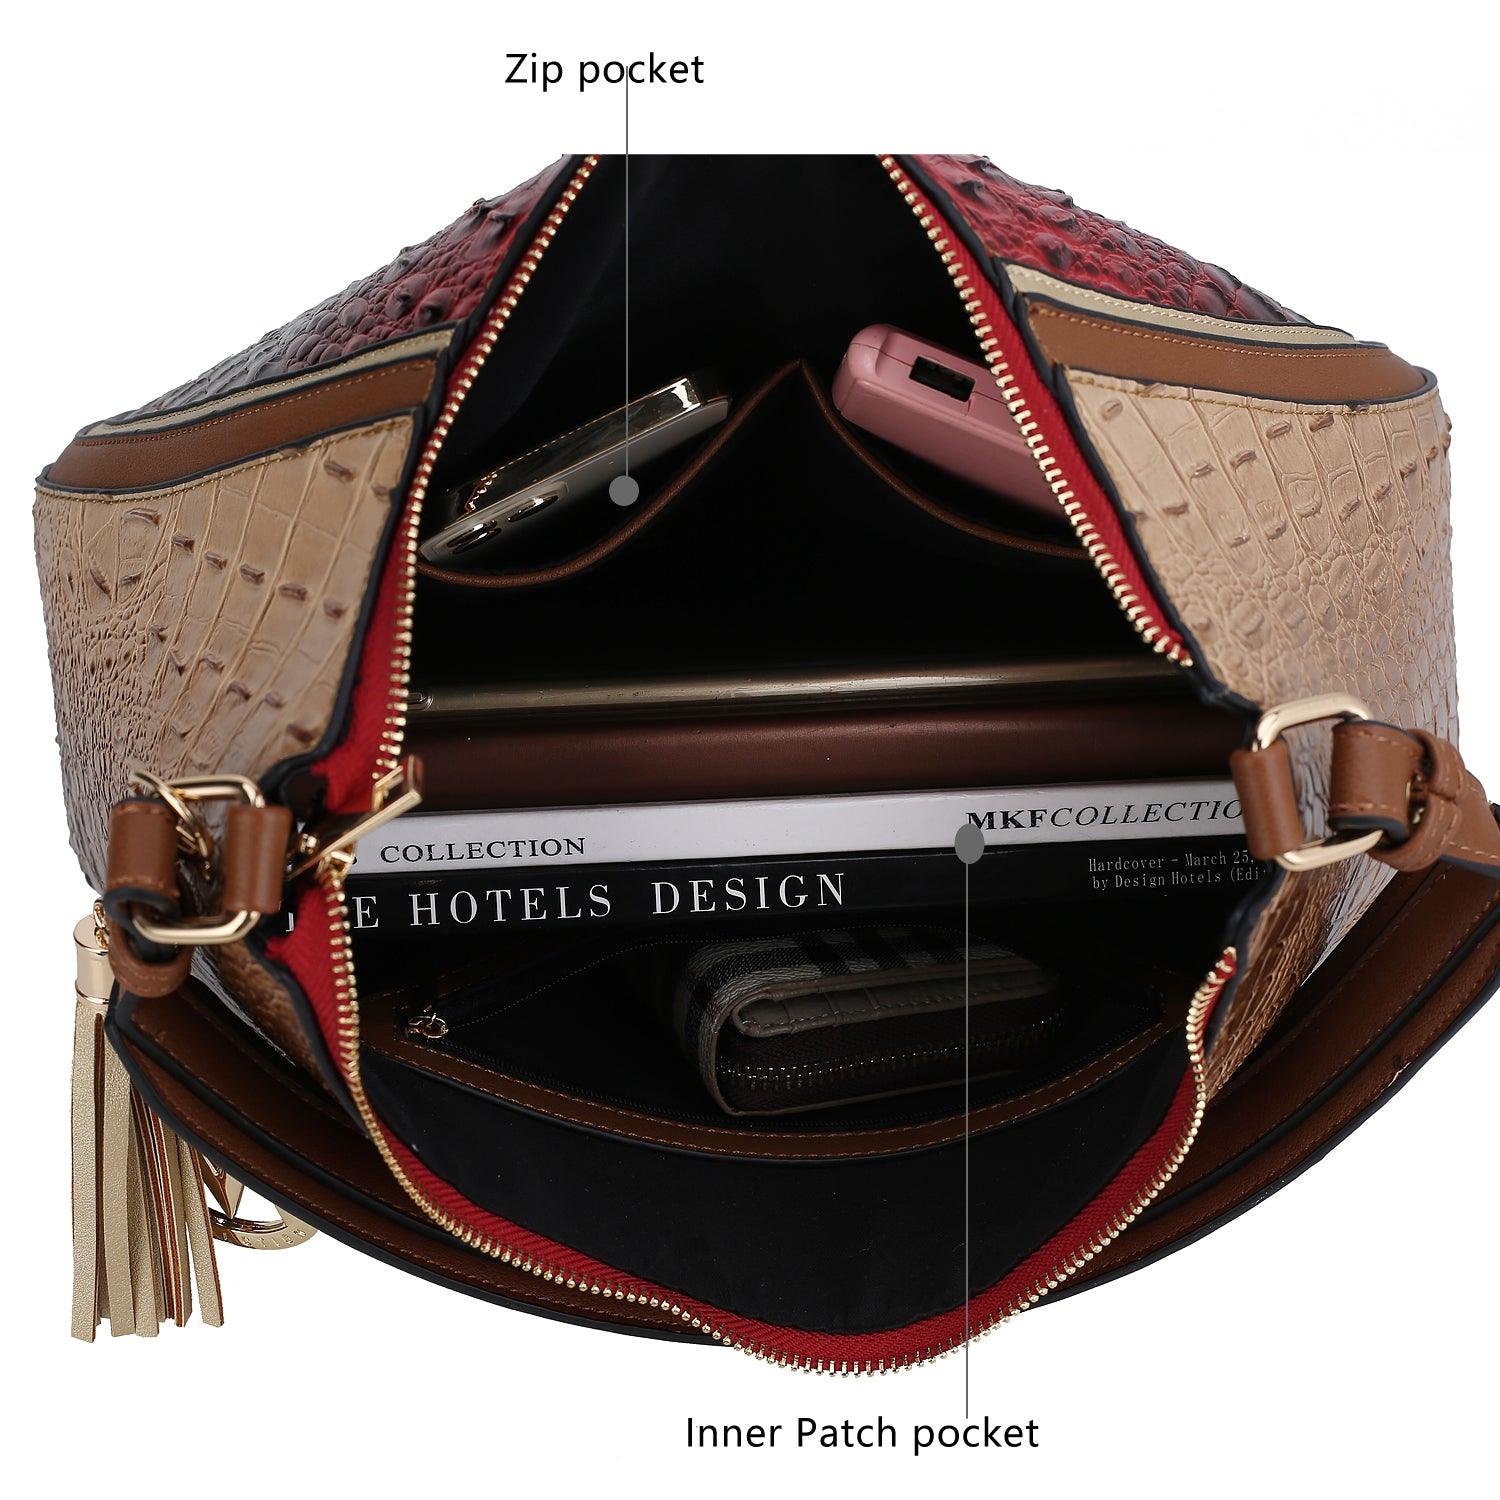 Wallets, Handbags & Accessories Nayra Embossed Hobo Bag